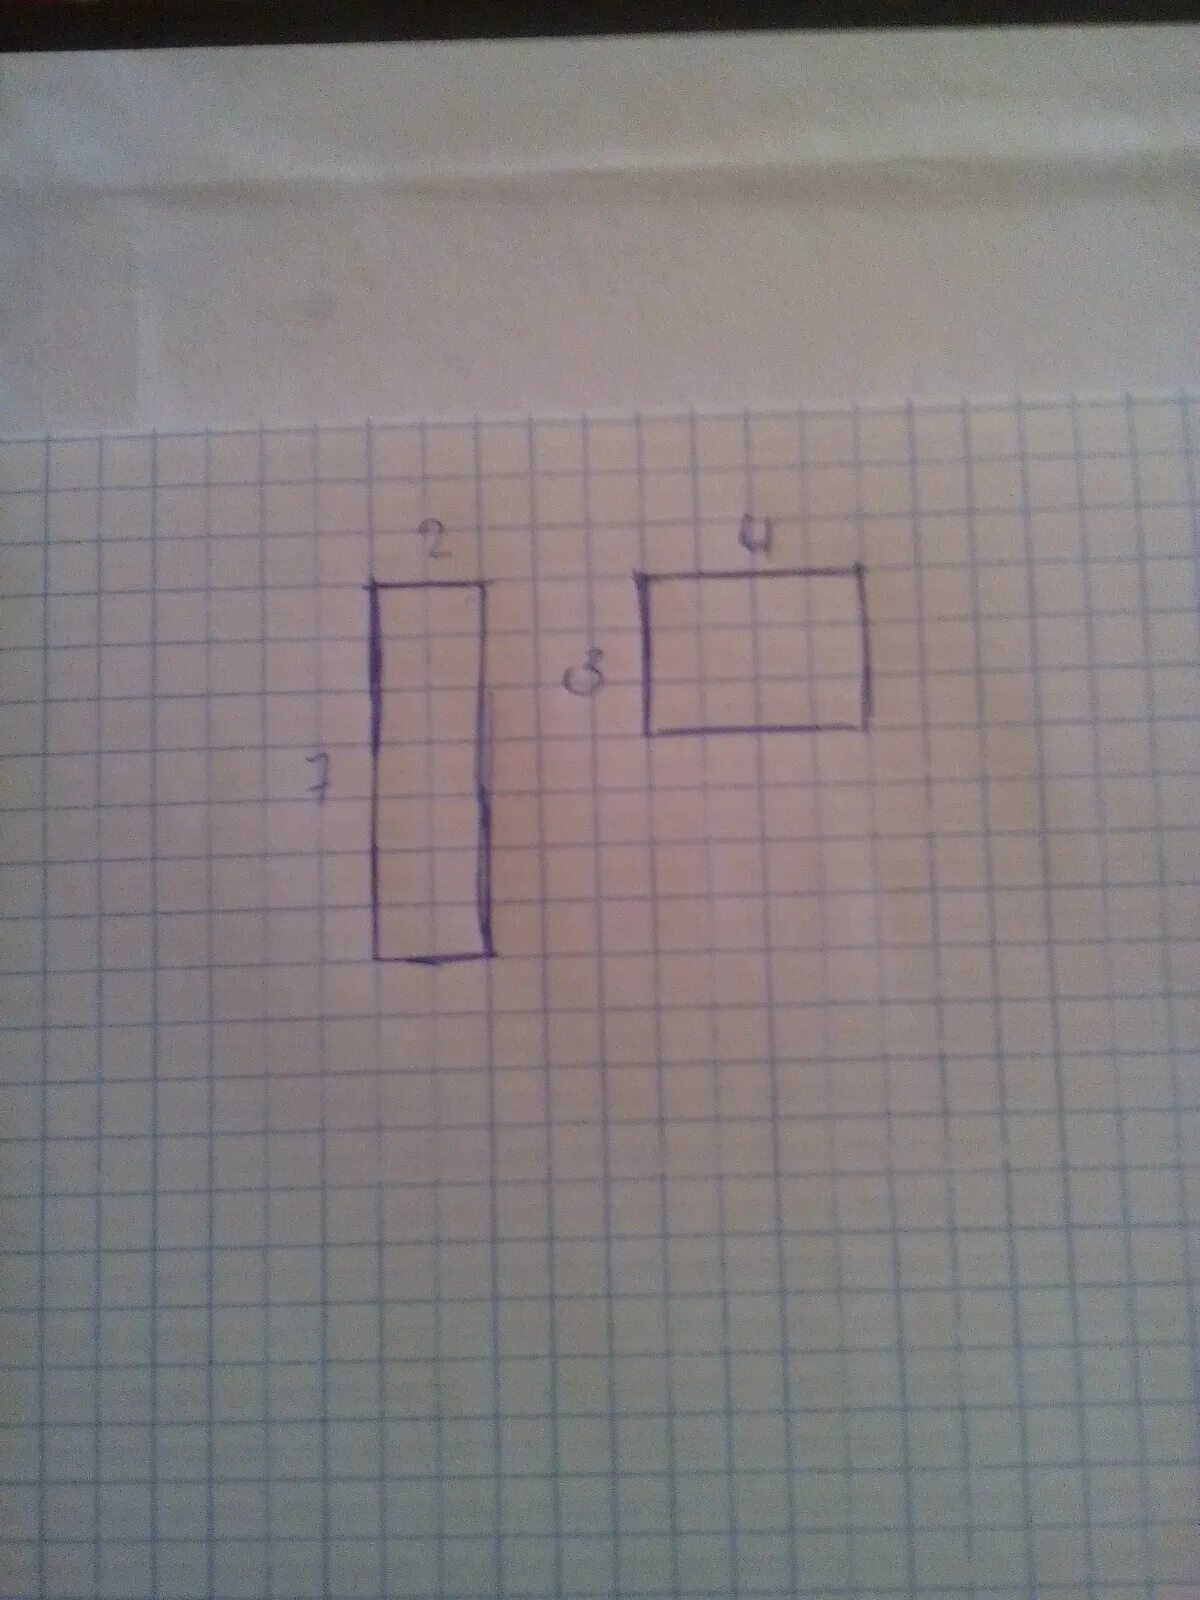 Начертить два разных прямоугольника с периметром 14 см. Начерти два прямоугольника. Начертить прямоугольник с периметром 14 см. Начерти несколько прямоугольников.